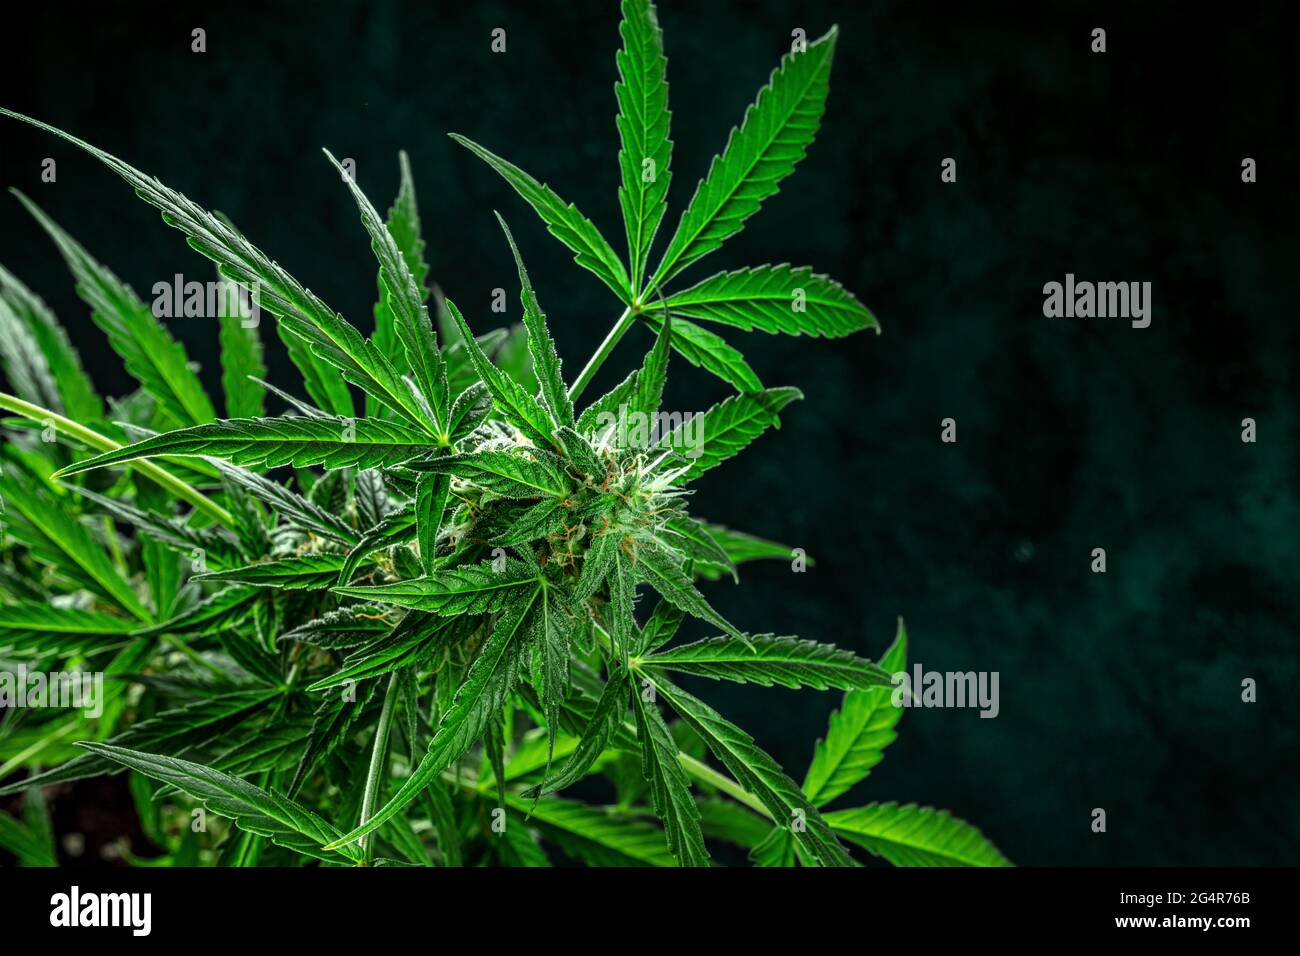 Plante de marijuana, presque prête pour la récolte, sur un fond sombre avec un endroit pour le texte. Fleurs de cannabis avec des stigmates jaunes et des feuilles vertes Banque D'Images